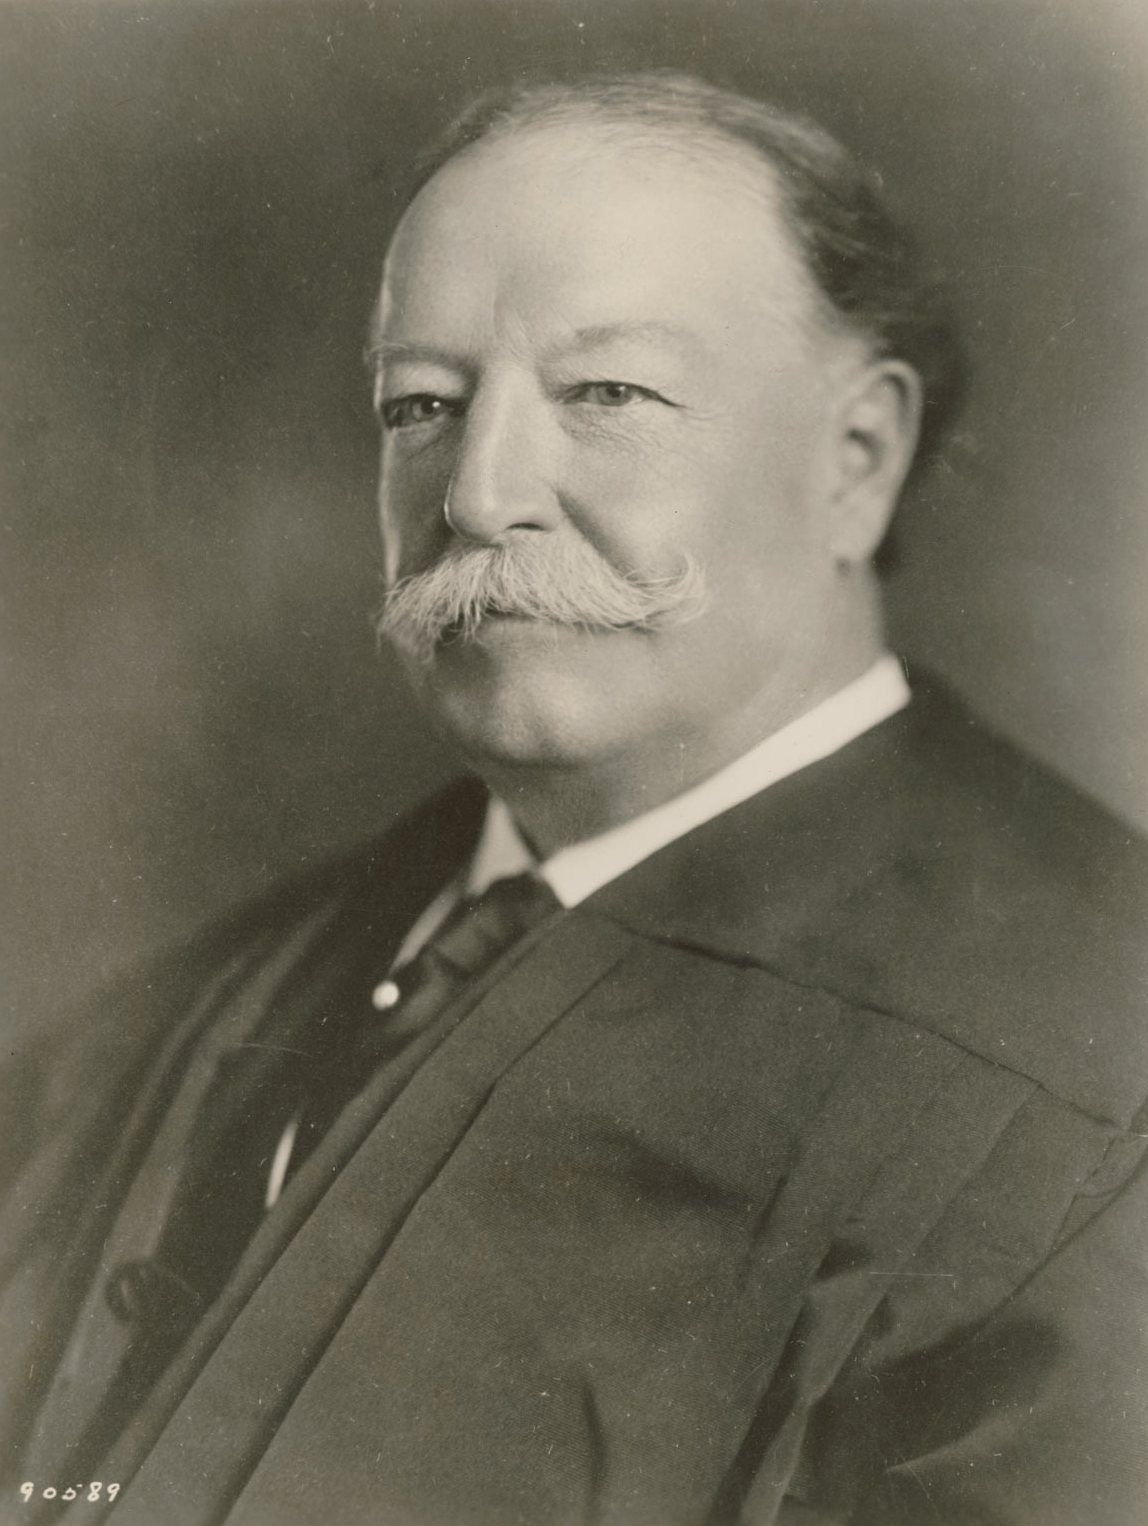 William_Howard_Taft_as_Chief_Justice_SCOTUS